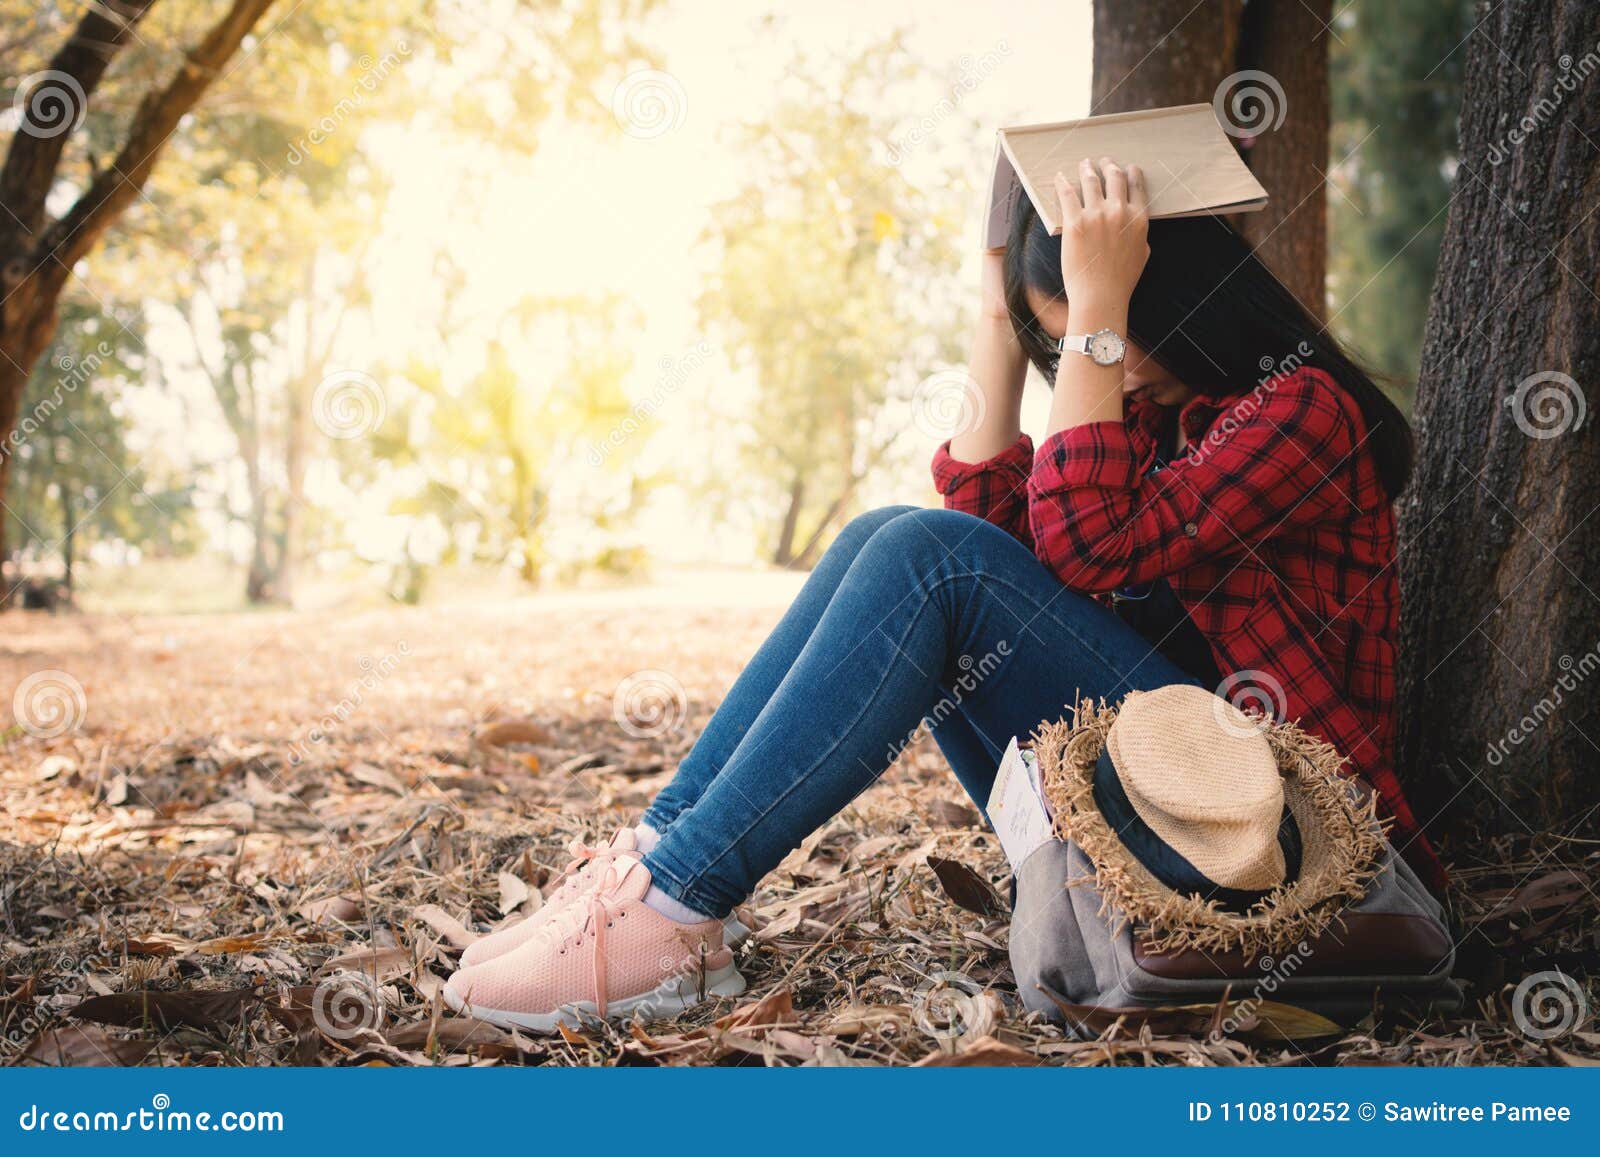 Ångestkvinnan om henne som studerar att sitta som är ensamt under det stora trädet parkerar på, färg av tappningsignalen och den mjuka fokusen